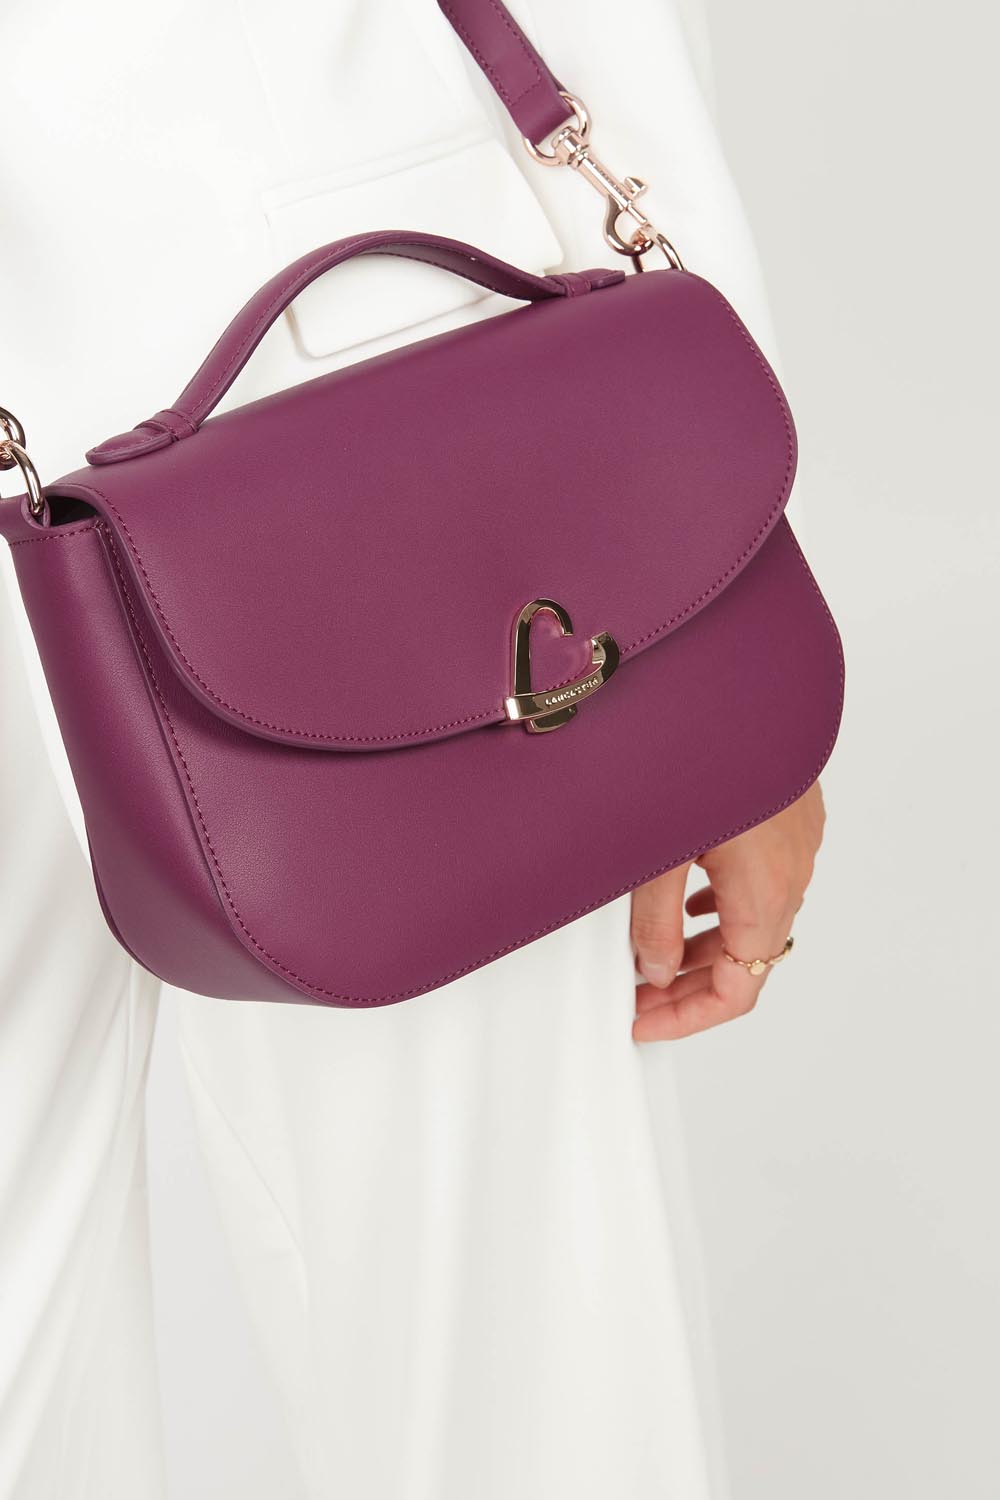 handbag - city philos #couleur_orchide